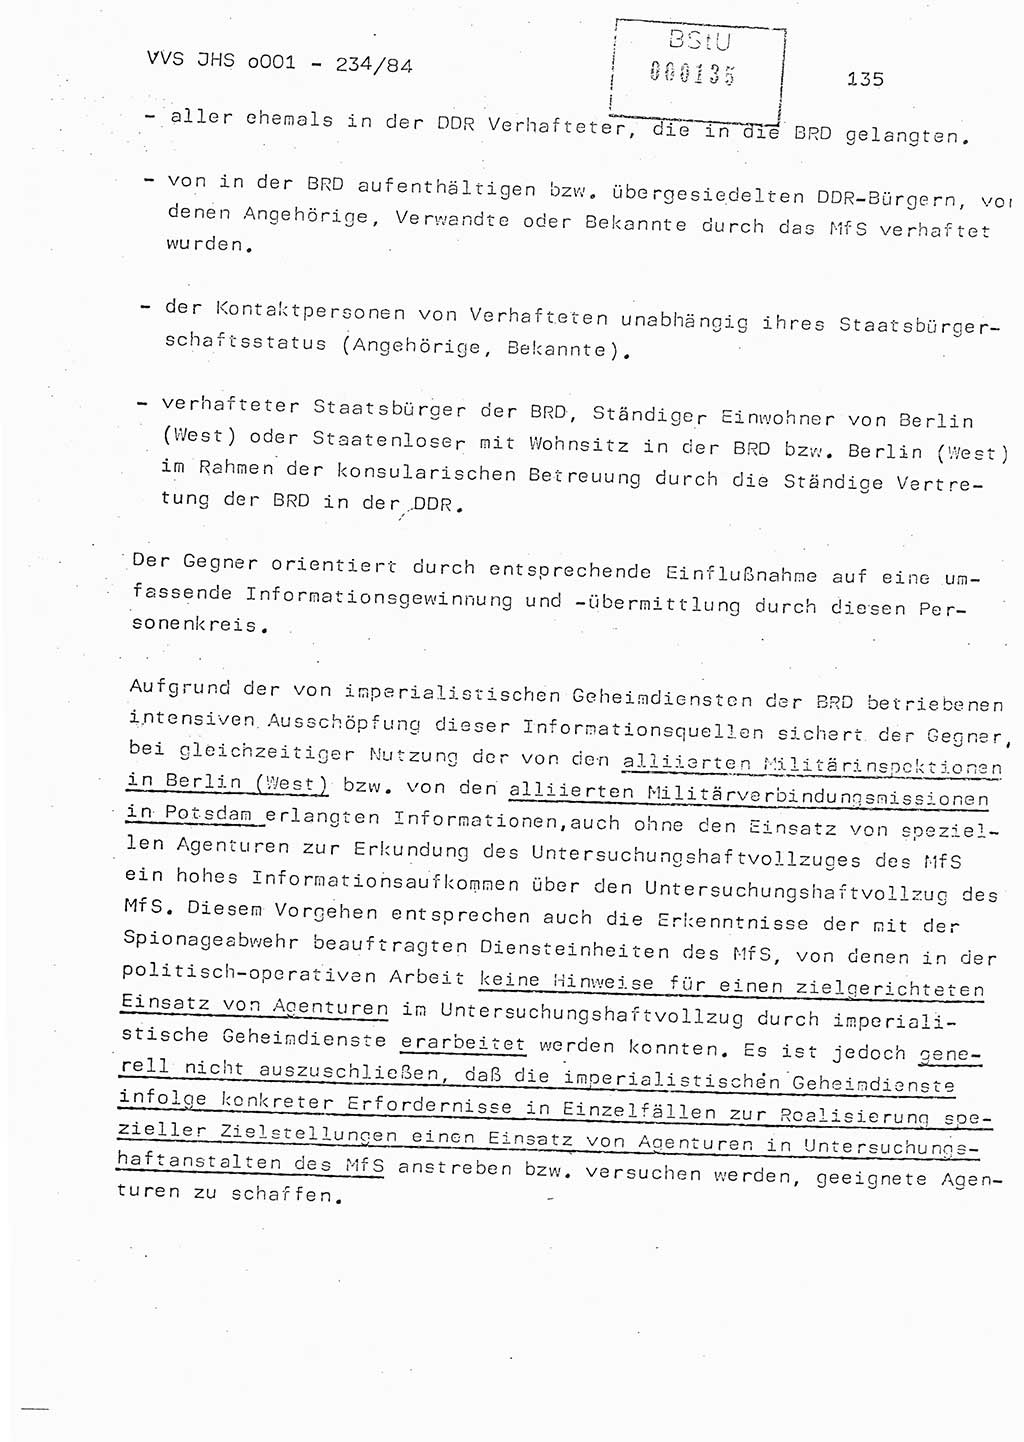 Dissertation Oberst Siegfried Rataizick (Abt. ⅩⅣ), Oberstleutnant Volkmar Heinz (Abt. ⅩⅣ), Oberstleutnant Werner Stein (HA Ⅸ), Hauptmann Heinz Conrad (JHS), Ministerium für Staatssicherheit (MfS) [Deutsche Demokratische Republik (DDR)], Juristische Hochschule (JHS), Vertrauliche Verschlußsache (VVS) o001-234/84, Potsdam 1984, Seite 135 (Diss. MfS DDR JHS VVS o001-234/84 1984, S. 135)